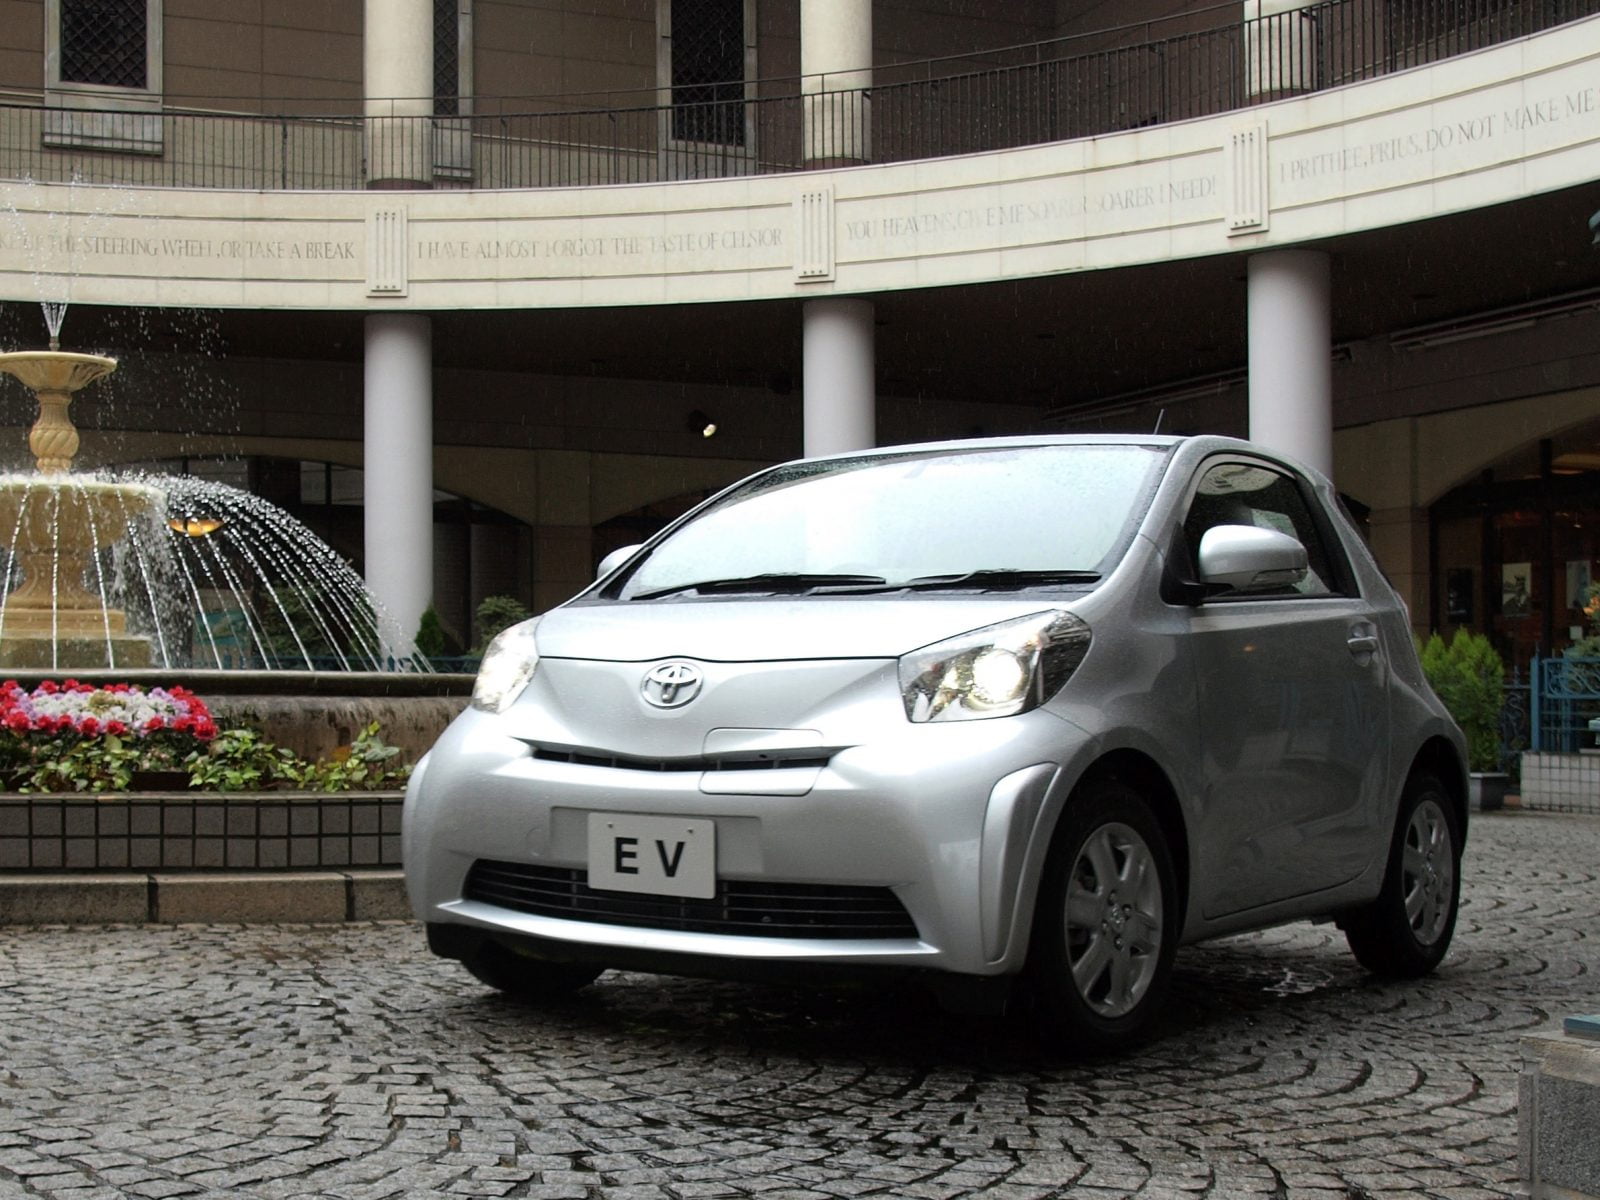 Toyota C + Pod – идеальный электромобиль для больших мегаполисов